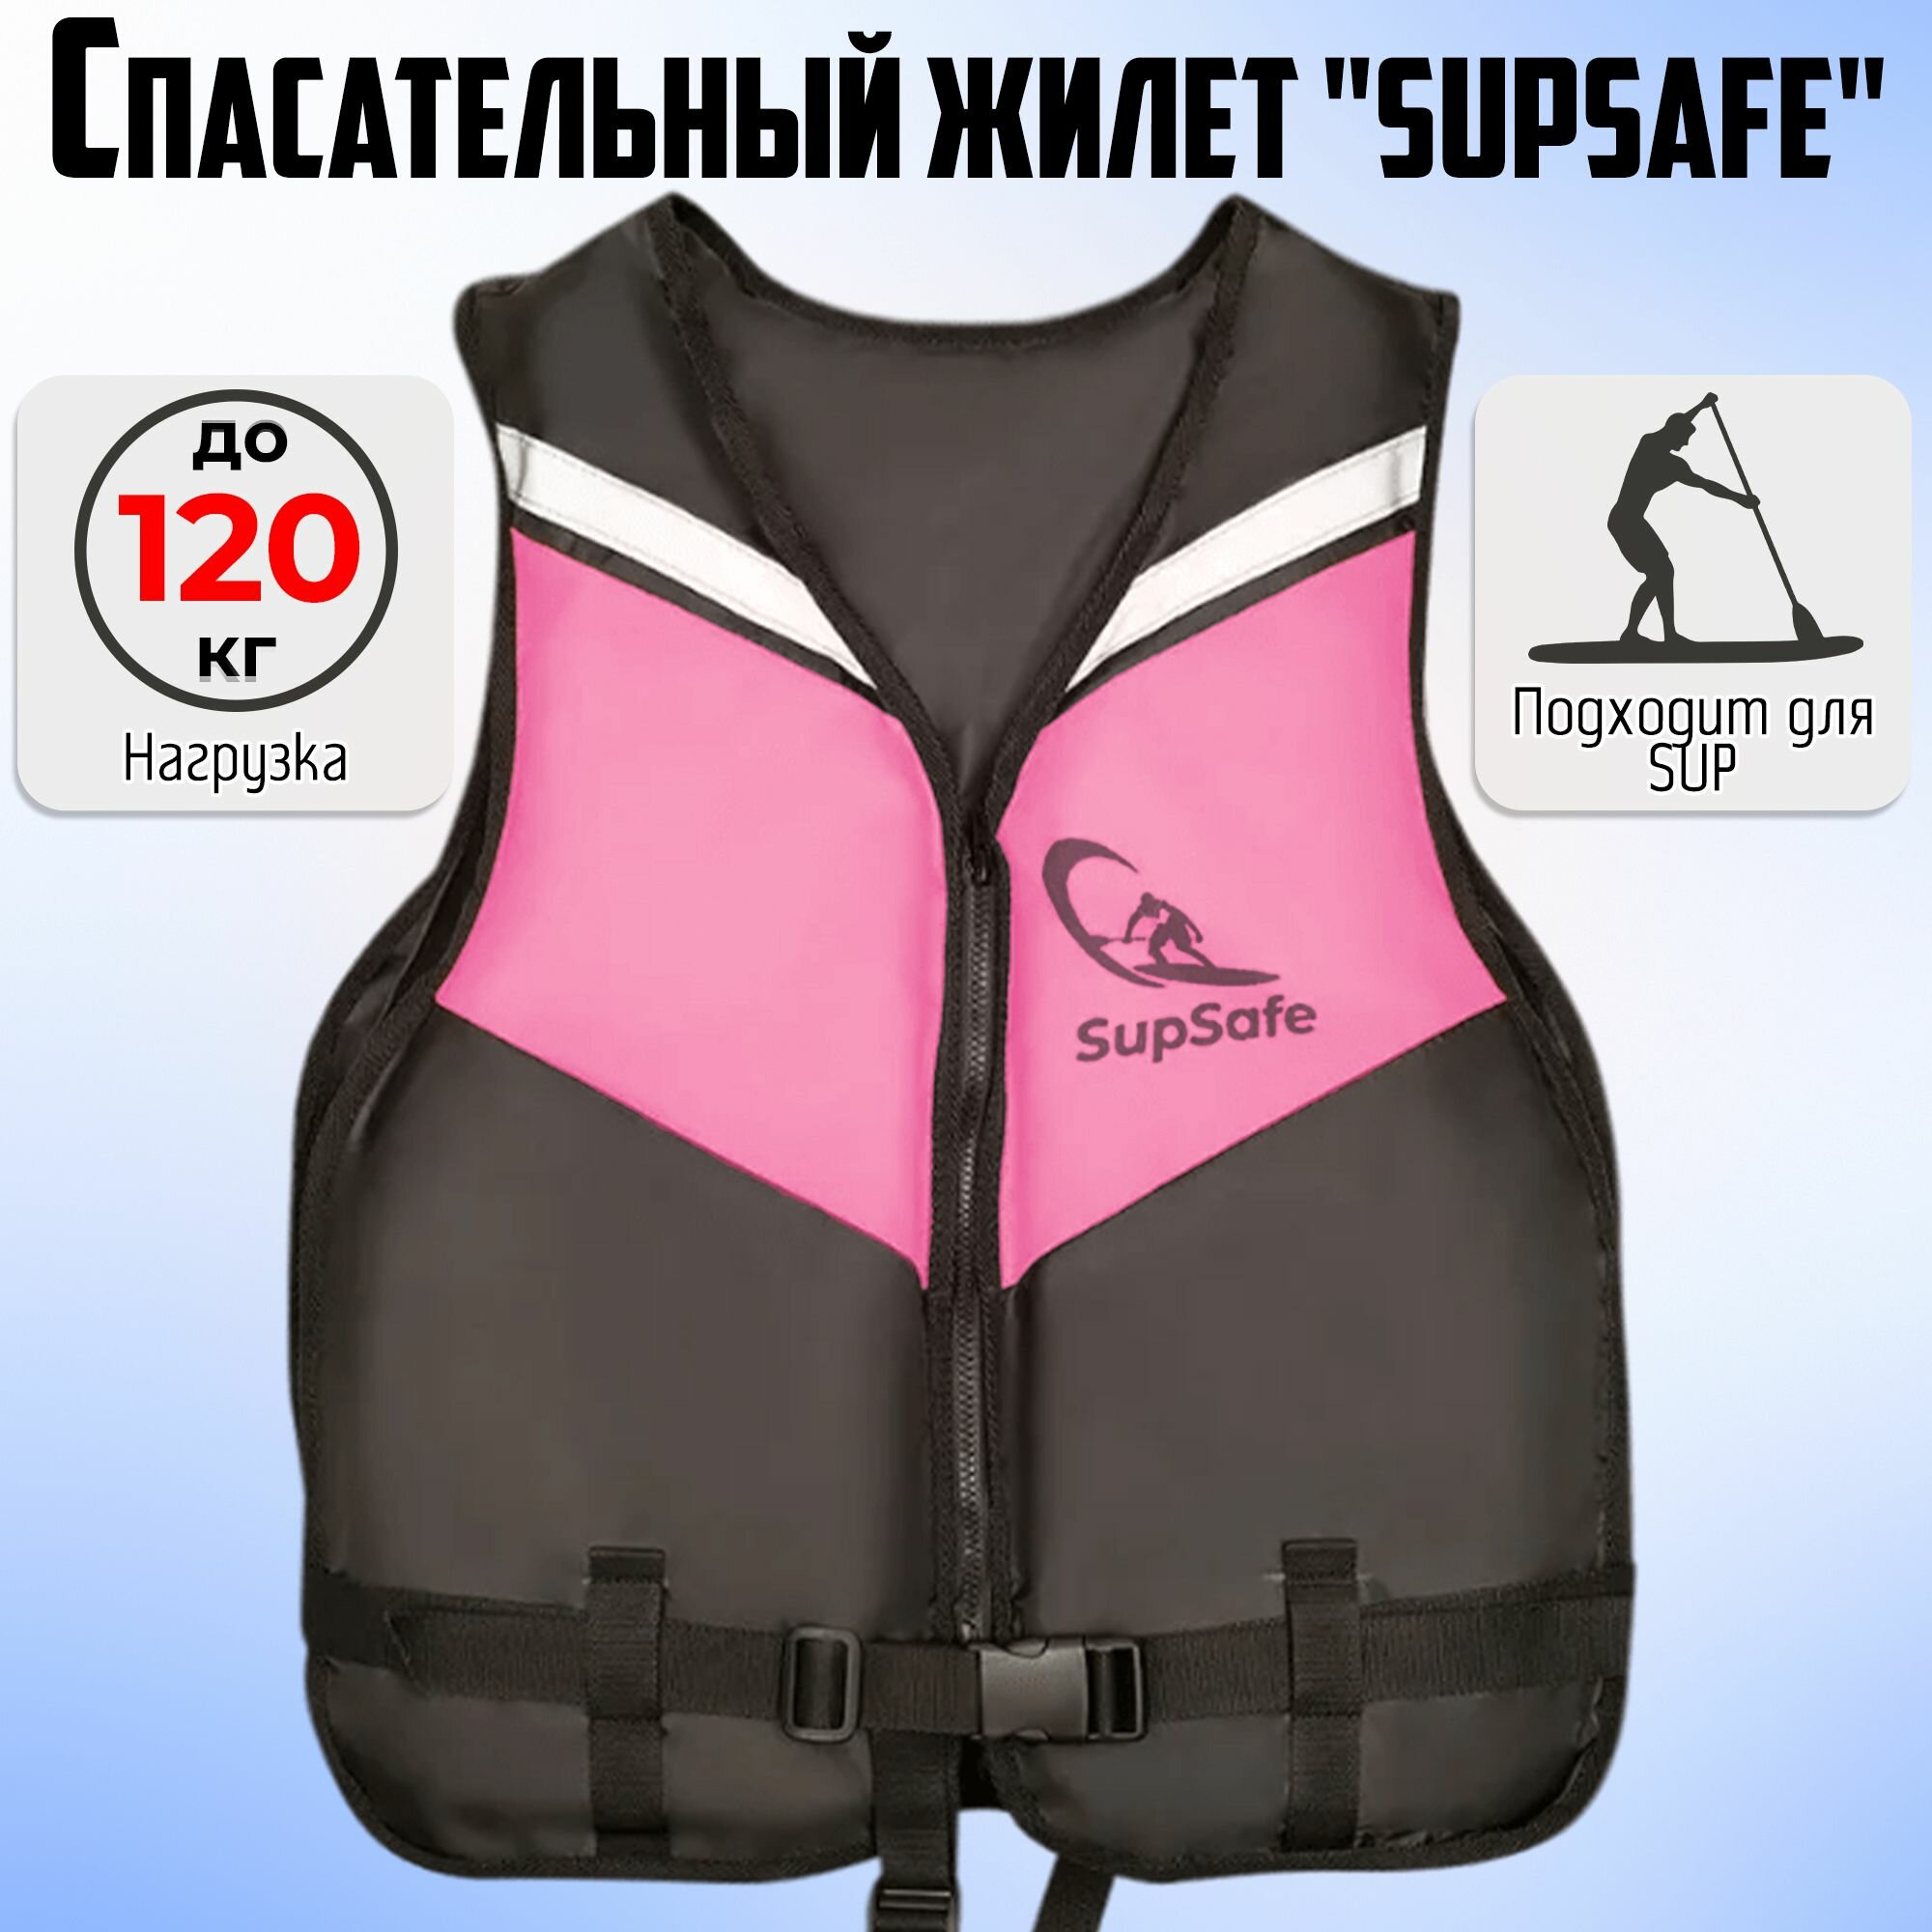 Спасательный жилет SupSafe до 120 кг, 52-54 черный; розовый